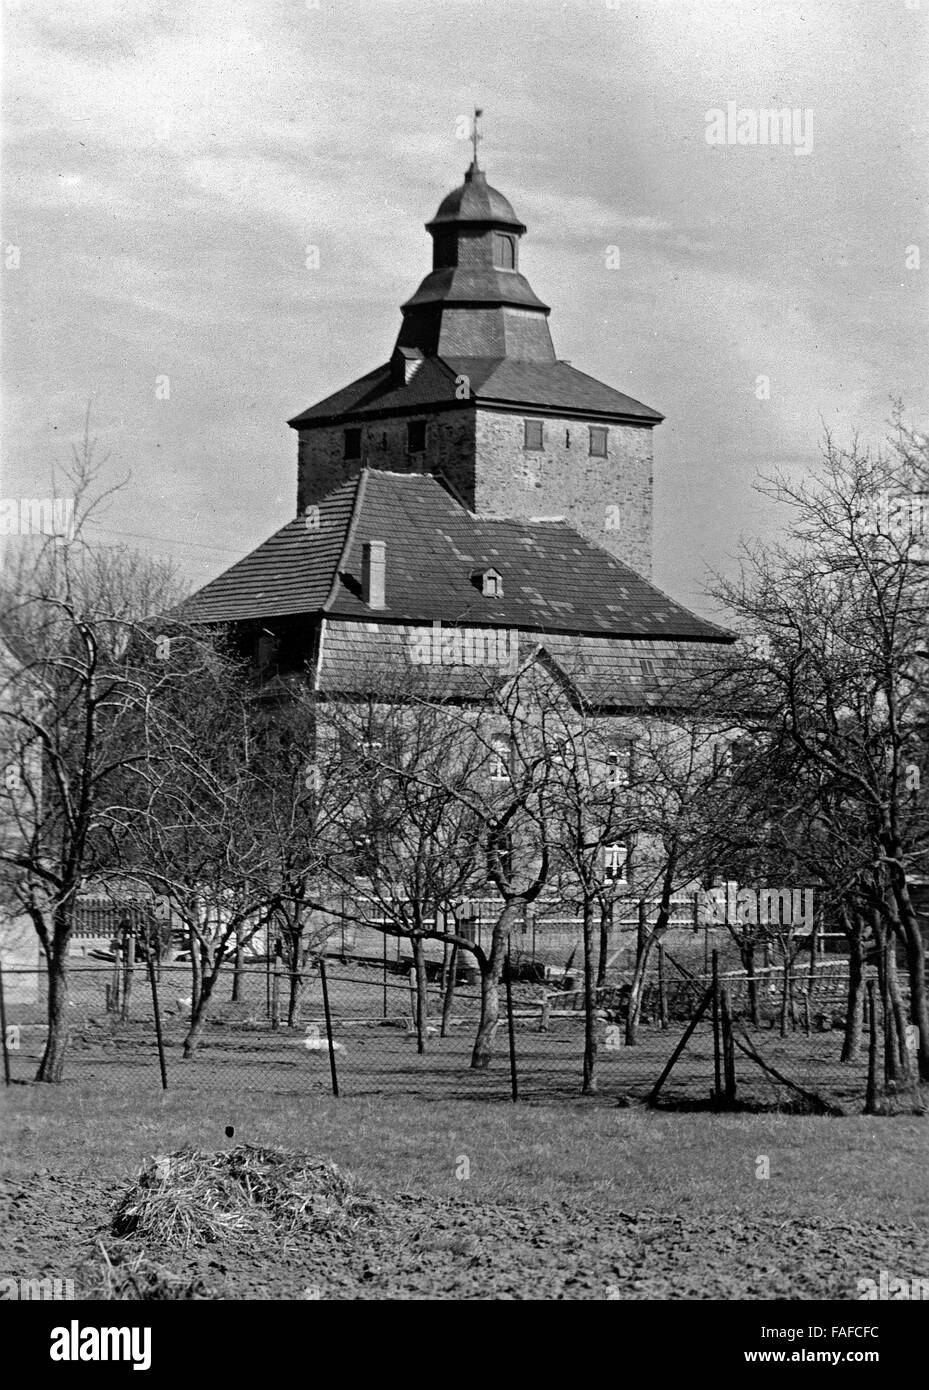 Die Burg Kirspenich bei Bad Münstereifel, Deutschland 1920er Jahre. Burg Kirspenich castello vicino a Bad Muenstereifel, Germania 1920s. Foto Stock